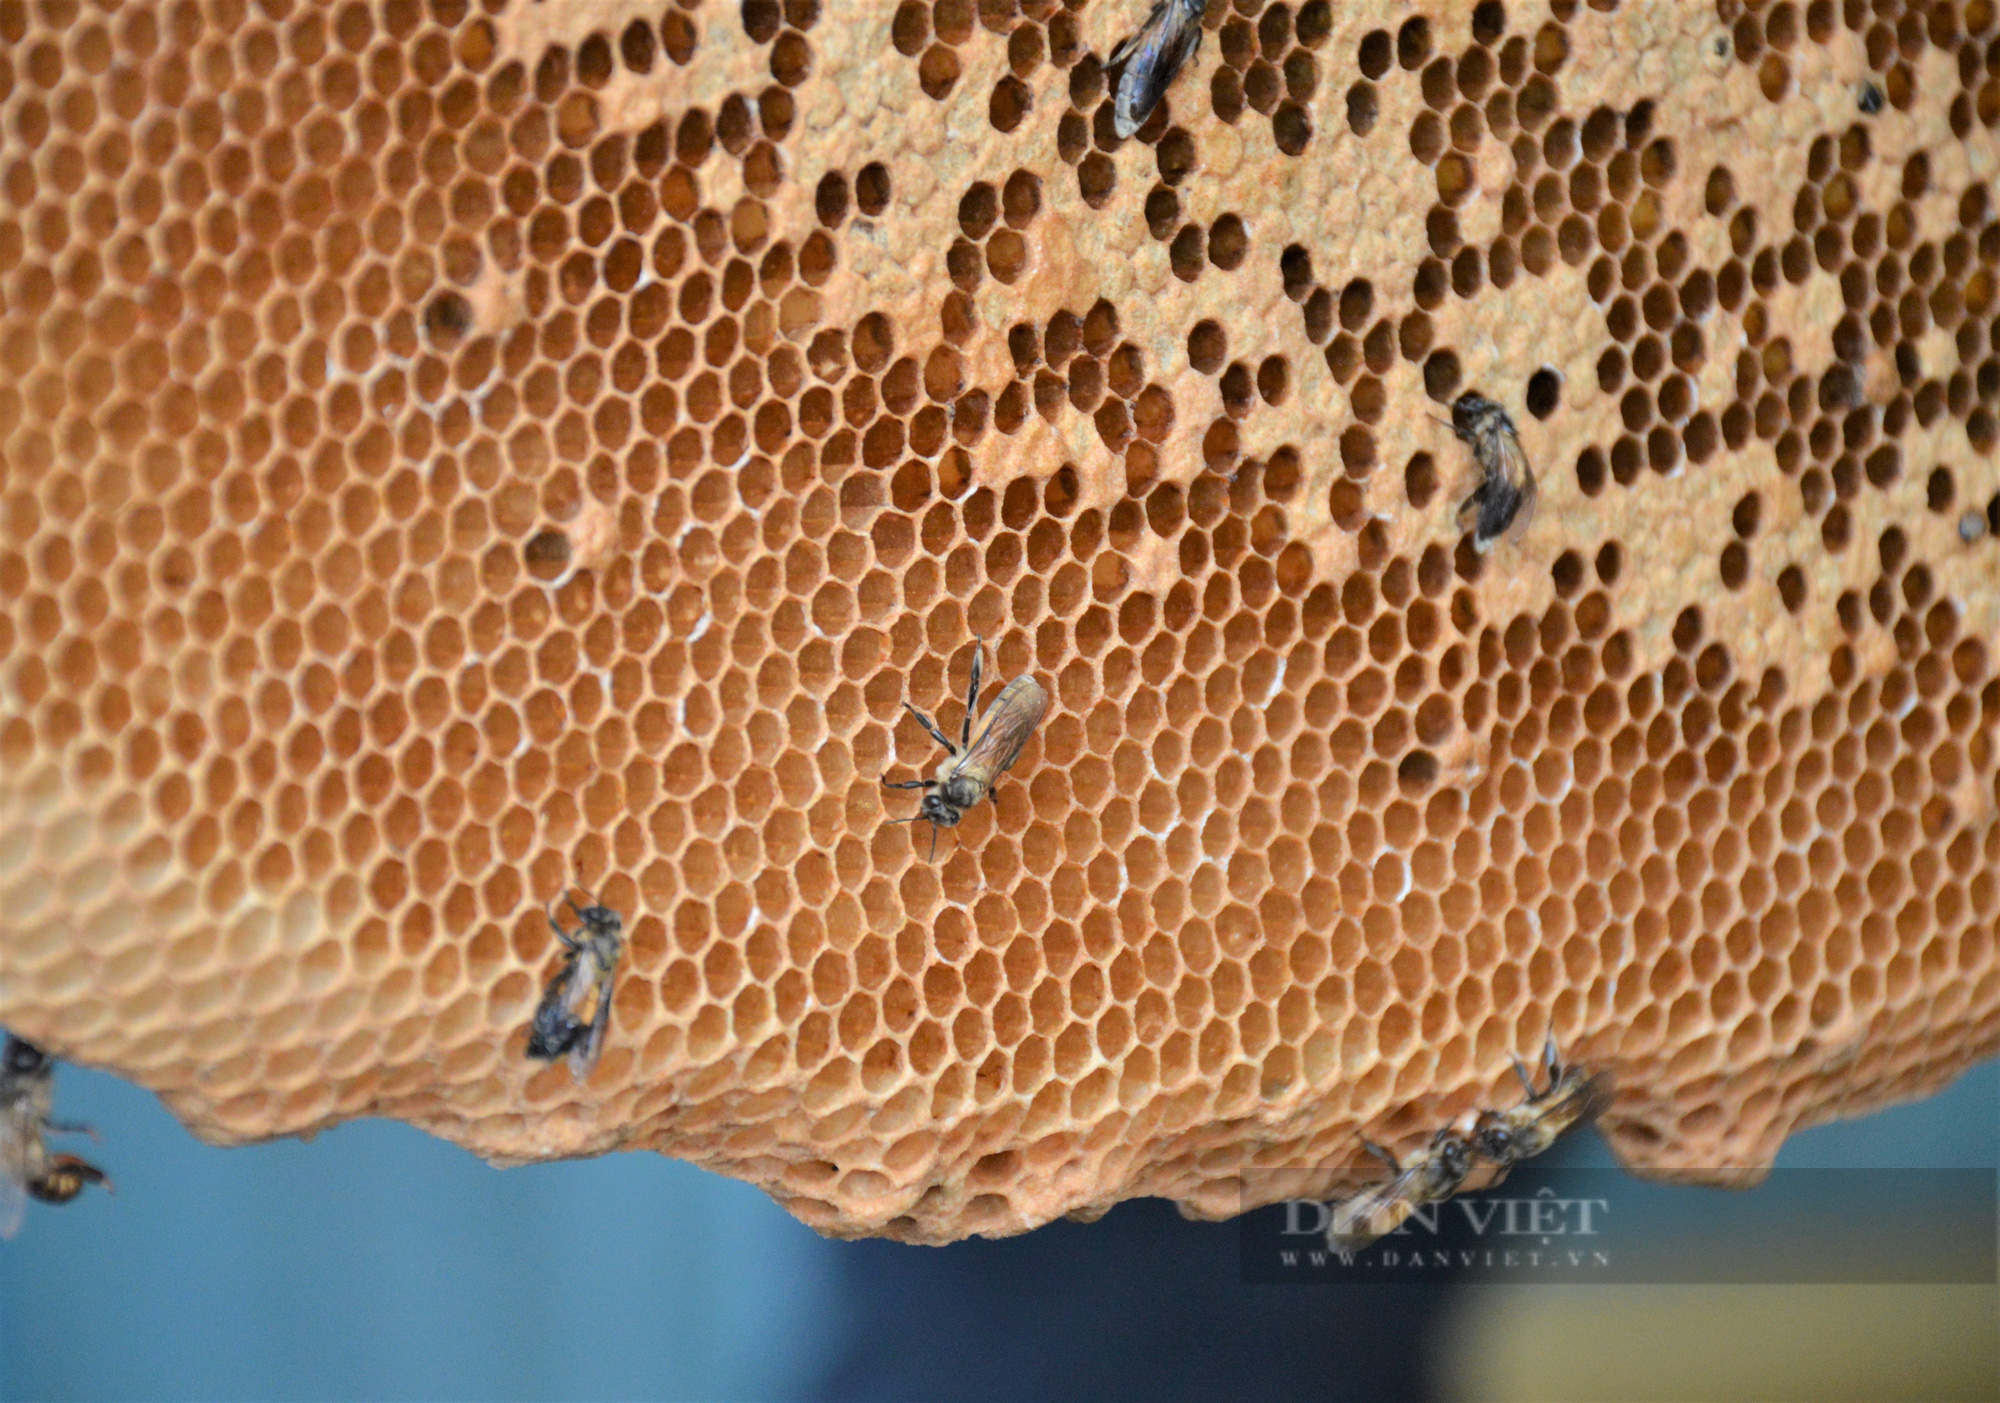 Cận cảnh tổ ong mật của nghề gác kèo ong xác lập kỷ lục Việt Nam - Ảnh 3.